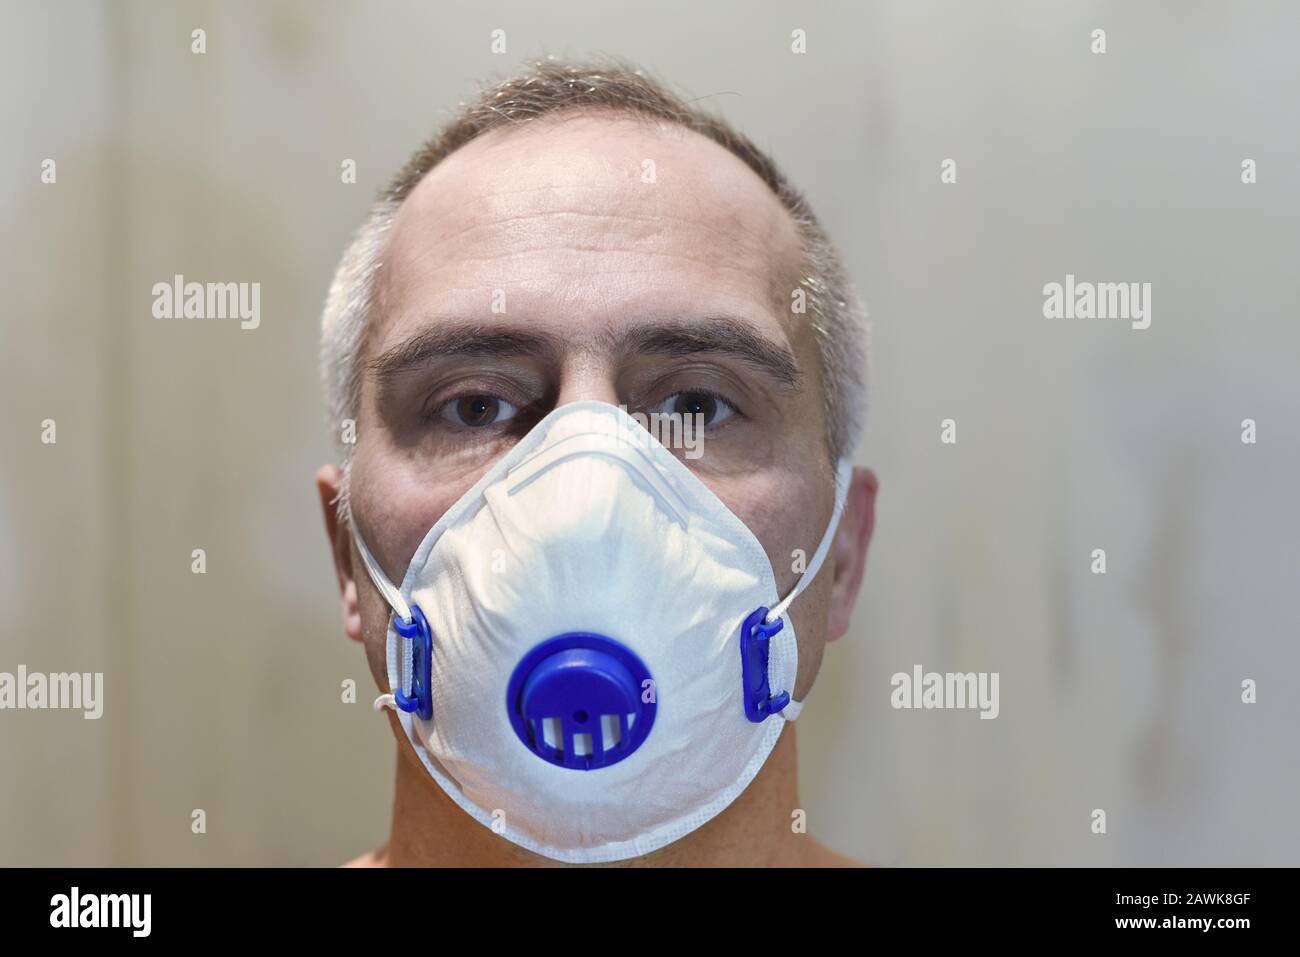 viso dell'uomo con maschera medica protettiva, respiratore filtro, concetto di inquinamento da polveri fini, infezione virale, focolaio di coronavirus, epidemia, healthc Foto Stock